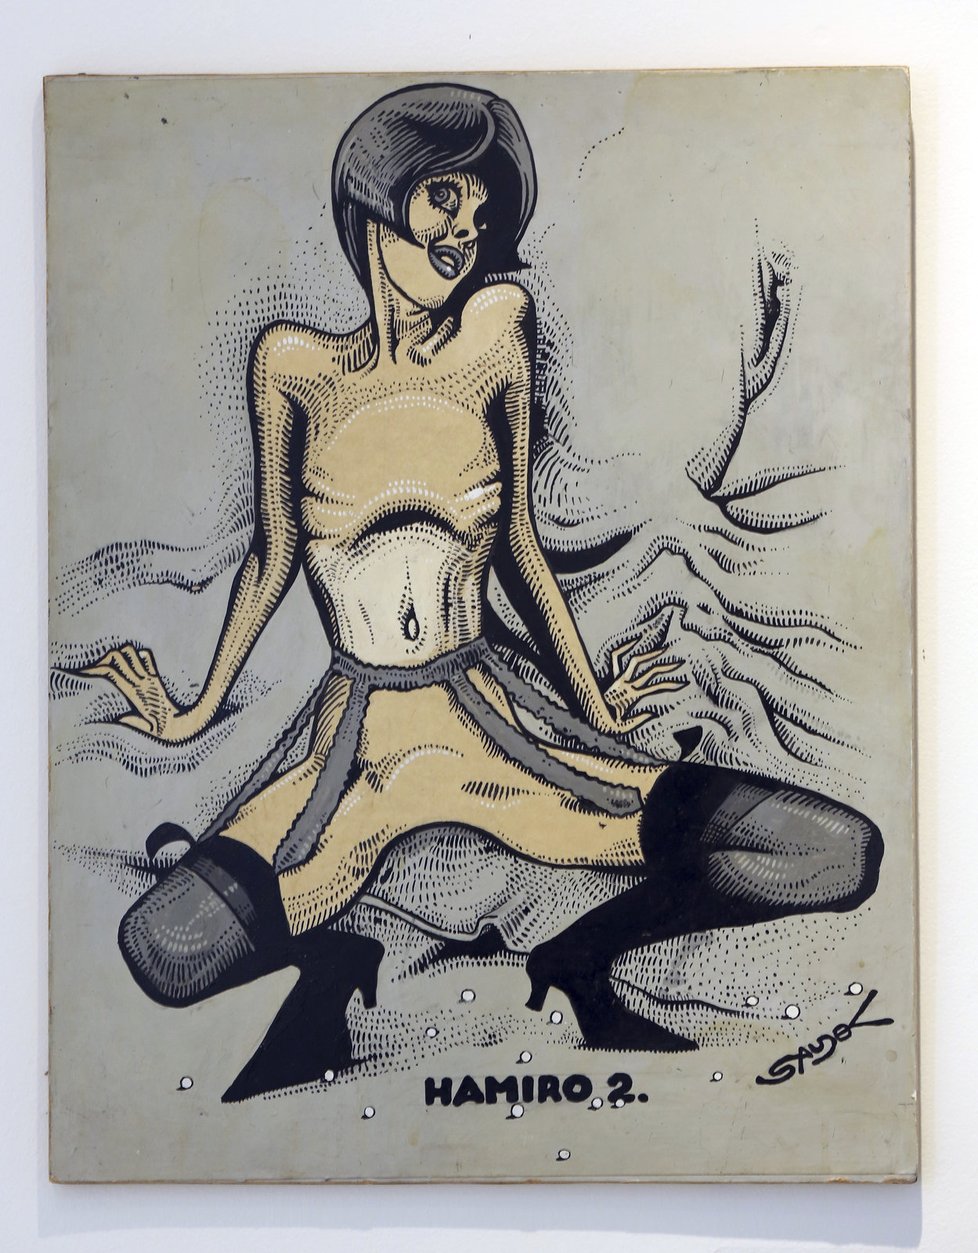 Tuto kresbu pojmenoval Saudek Hamiro. To je přitom označení pro kvalitní české panenky.